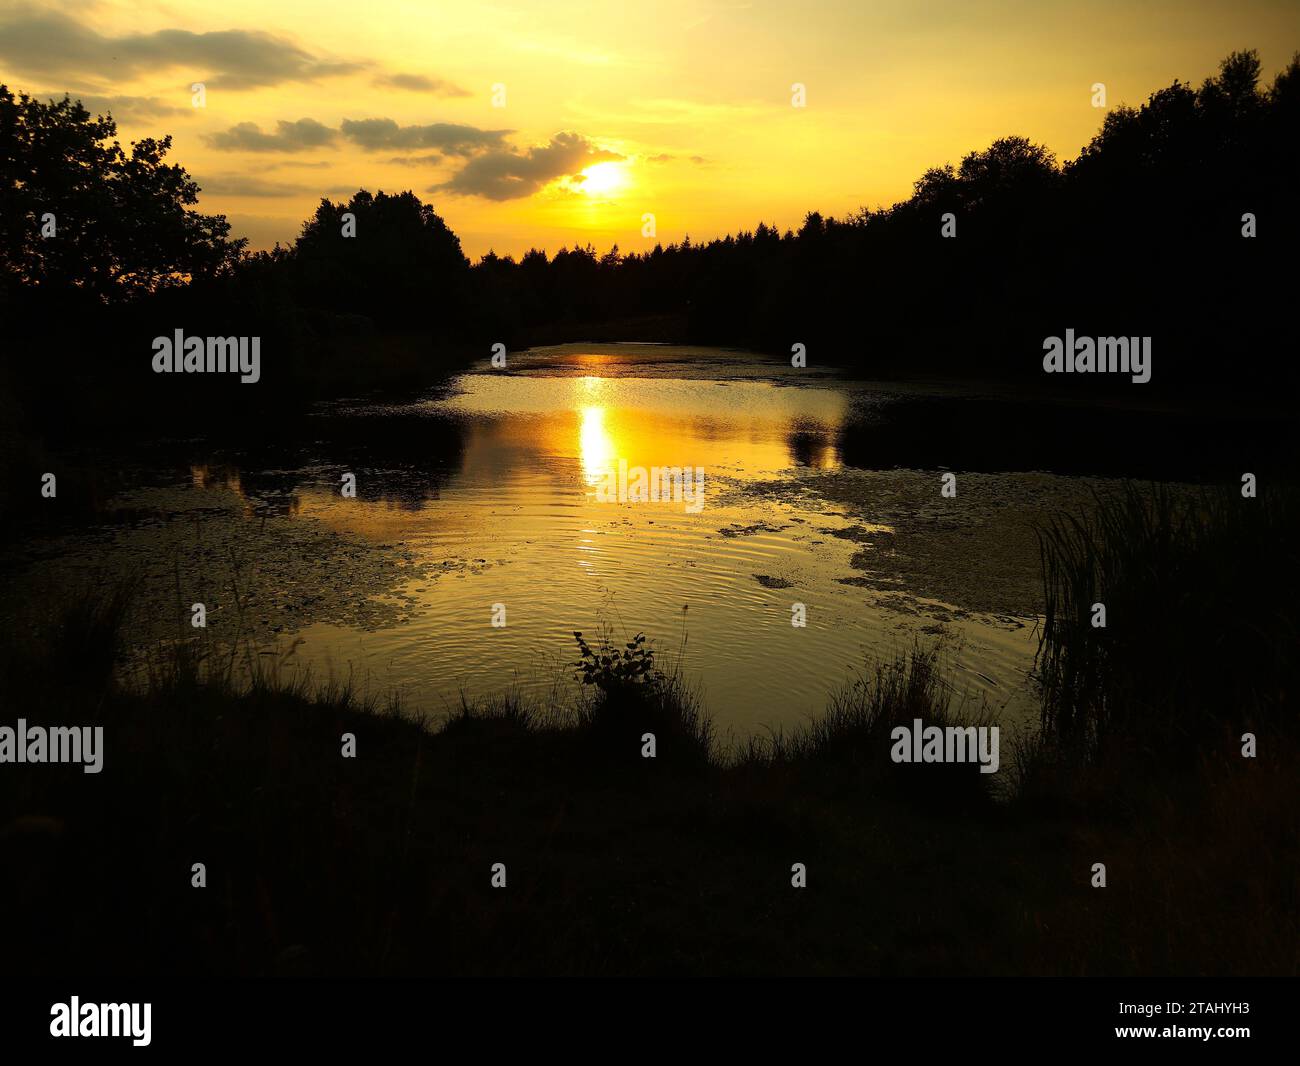 Relax, Rest, Coppice Image entstand kurz vor Sonnenuntergang stille Wasser schwimmt, während Blätter in Richtung Himmel schauen Schlaf letzte Aufgabe erledigt. Stockfoto